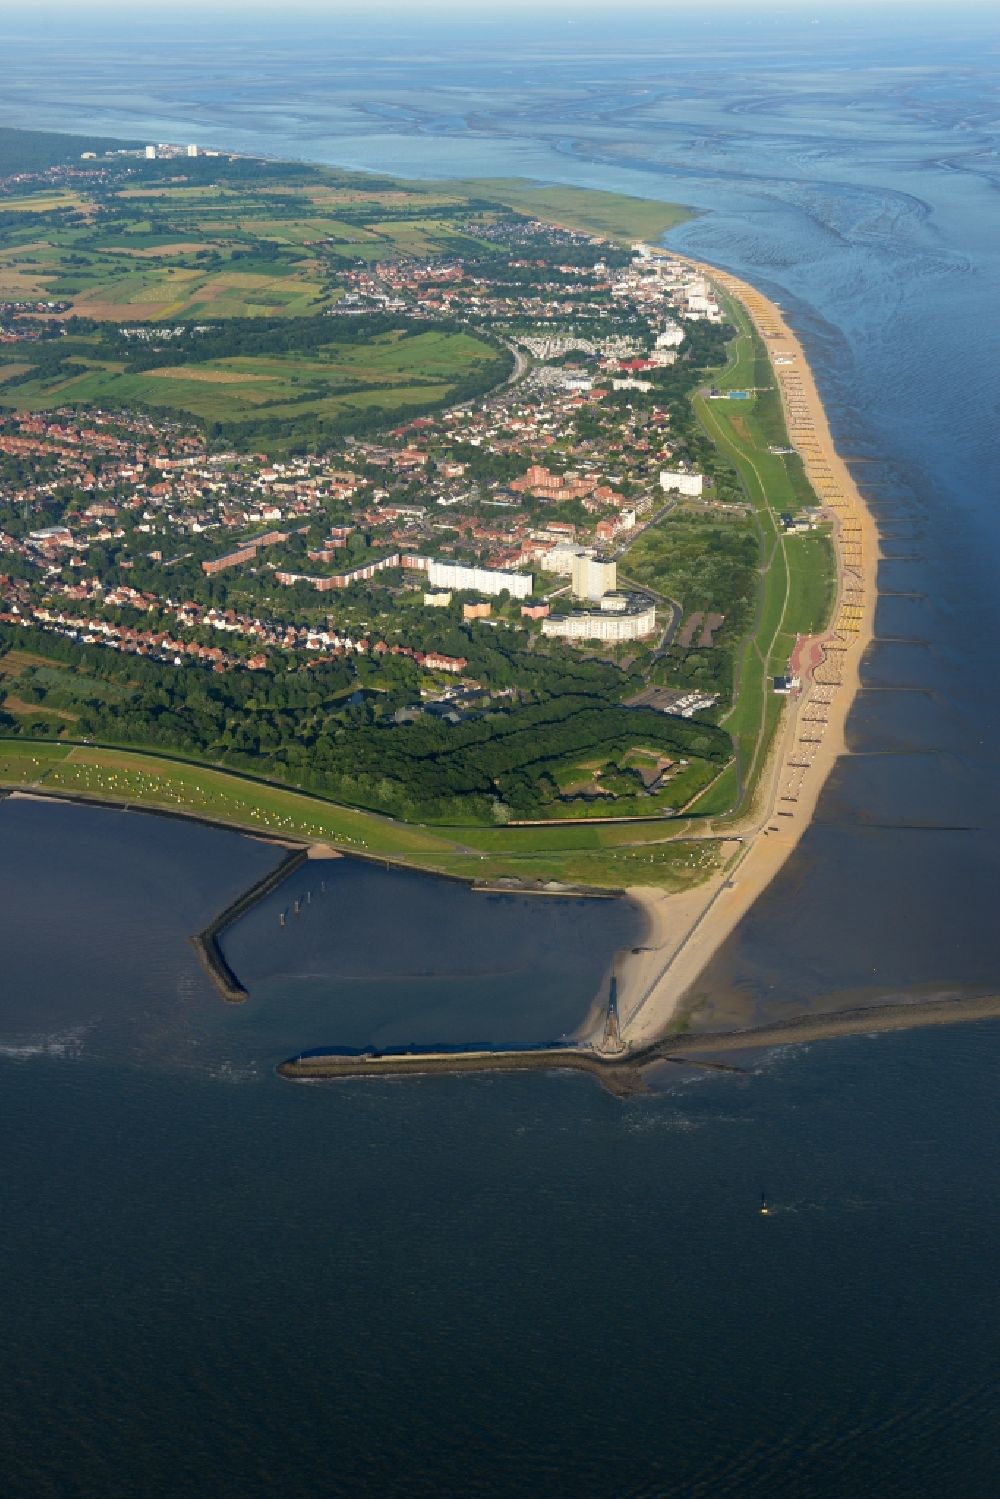 Luftbild Cuxhaven - Stadtteilansicht der Kurviertel Döse an der Küste der Nordsee am Wattenmeer in Cuxhaven im Bundesland Niedersachsen